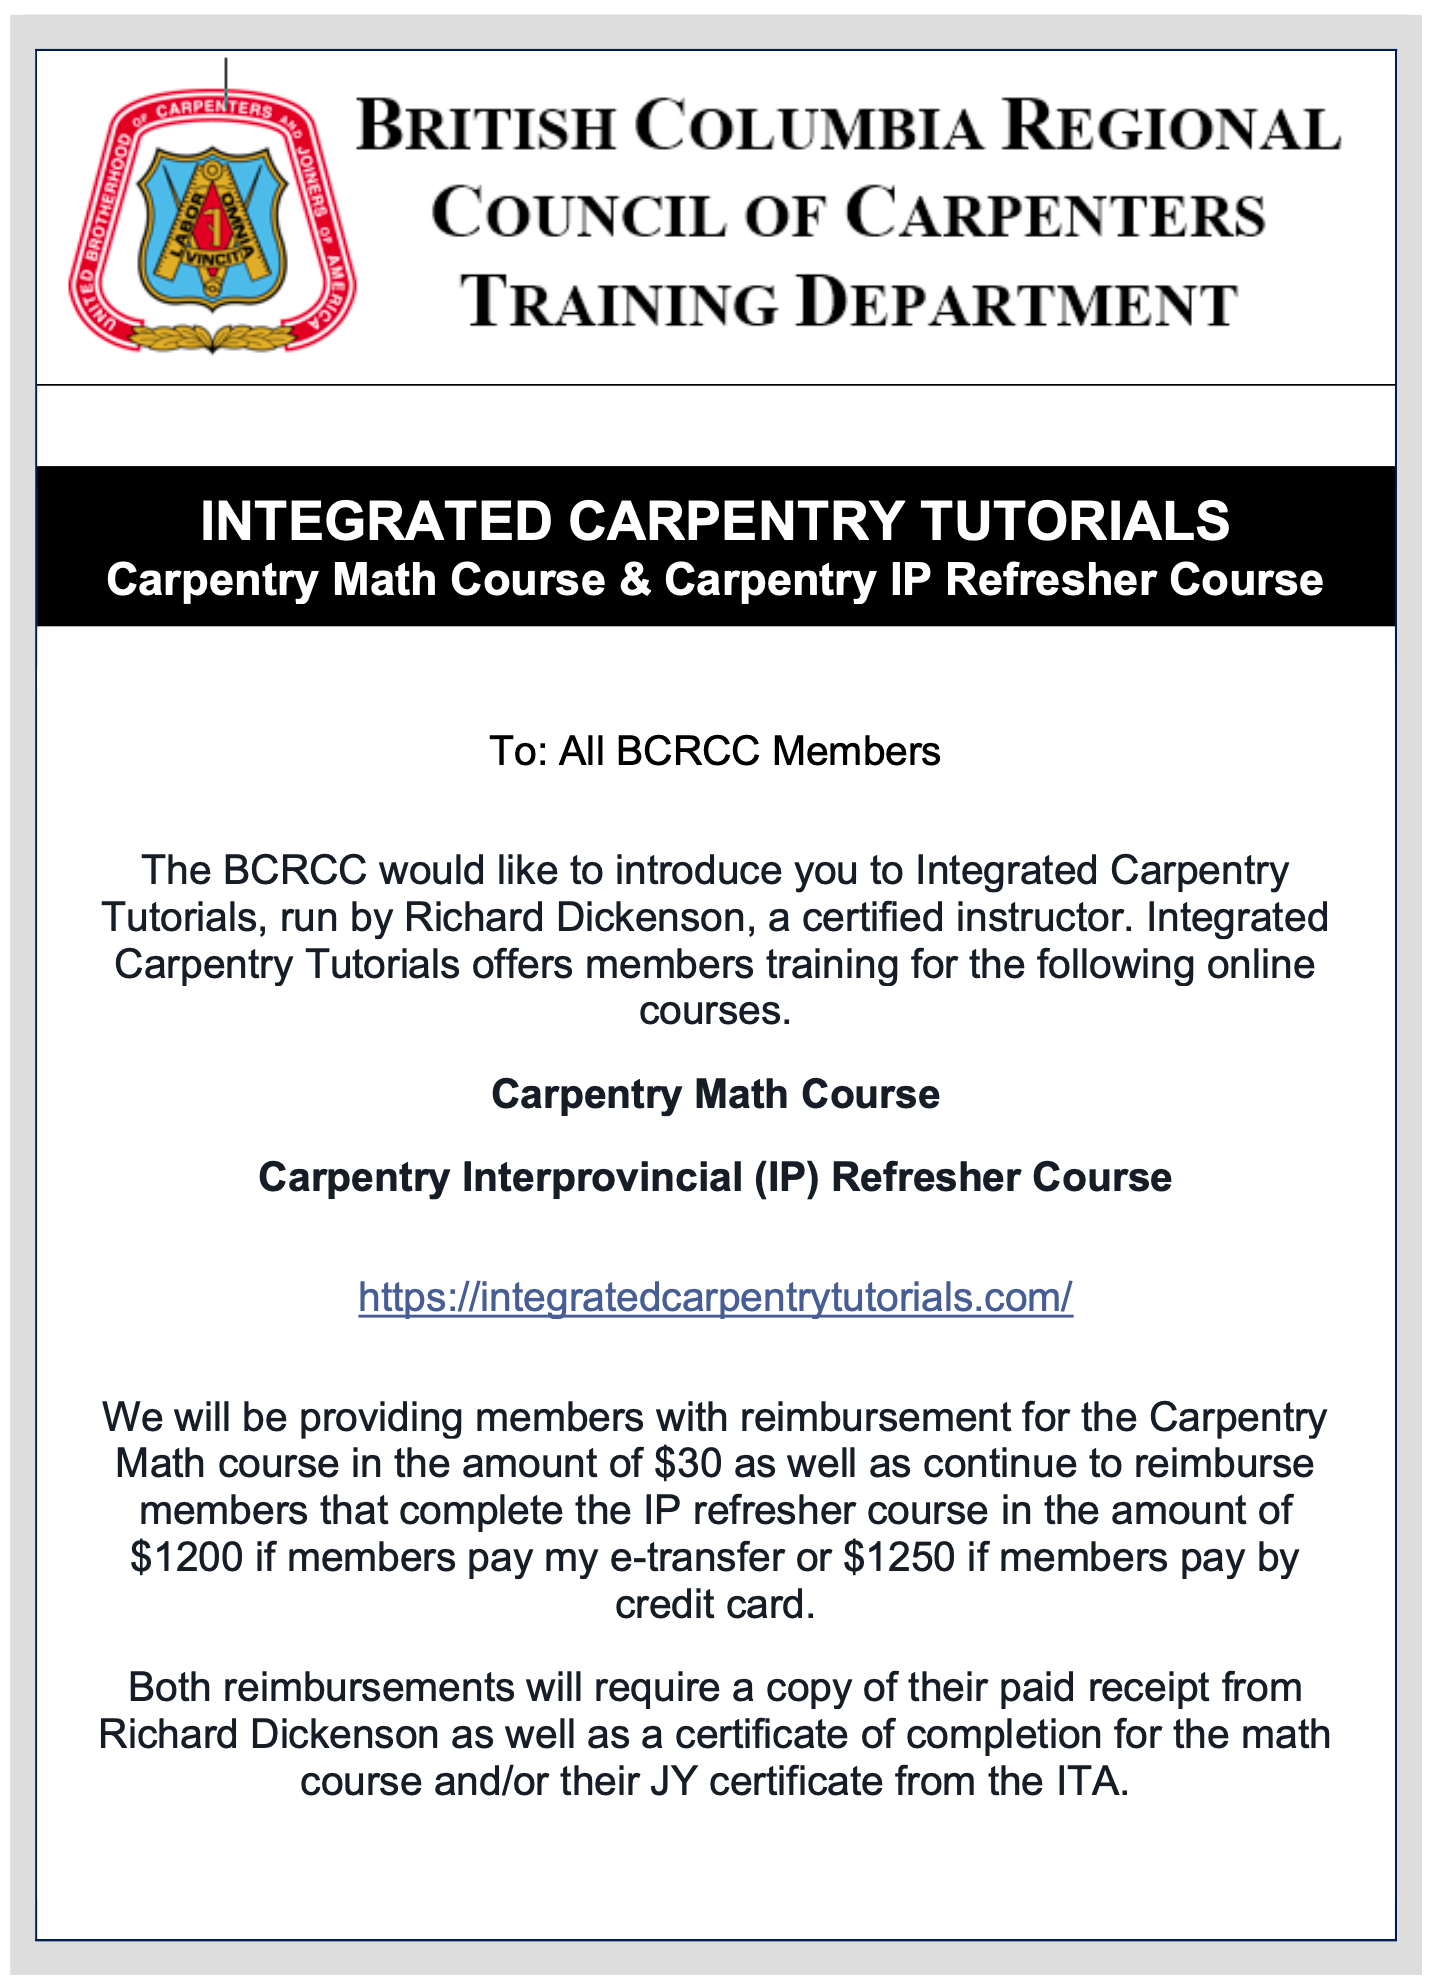 BCRCC Endorsement - Integrated Carpentry Tutorials